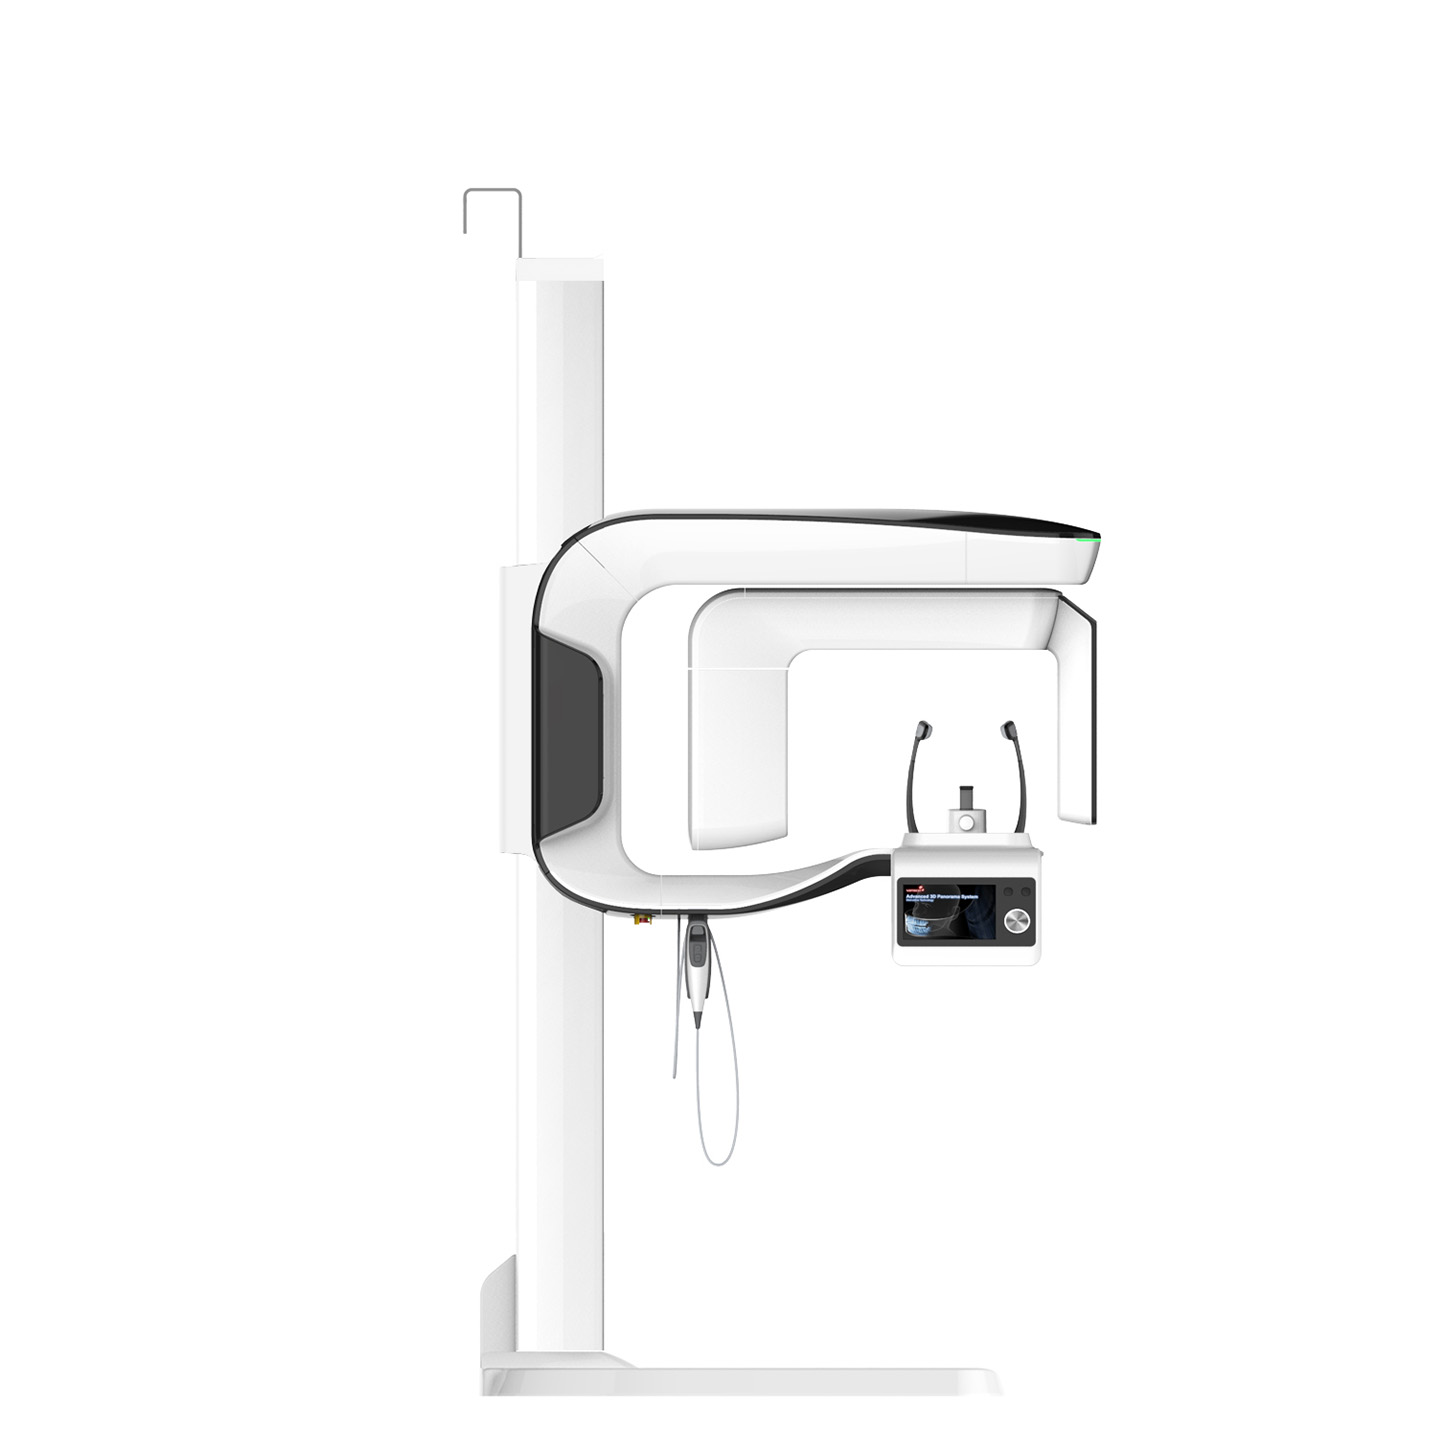 В 250 корпусе появился томограф с цефалостатом PaX-i3D